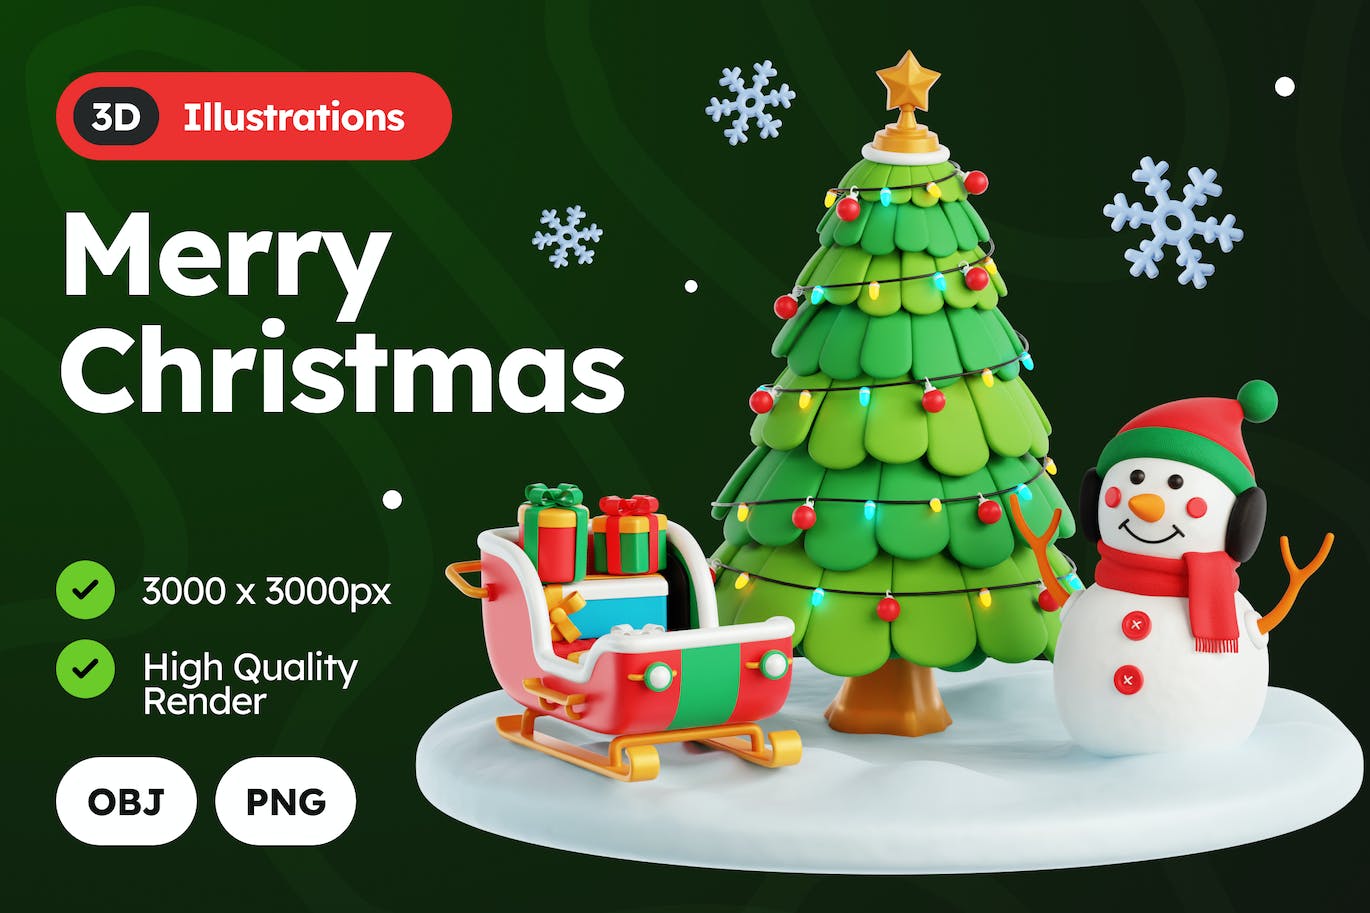 3D 圣诞快乐图 (PNG,OBJ)